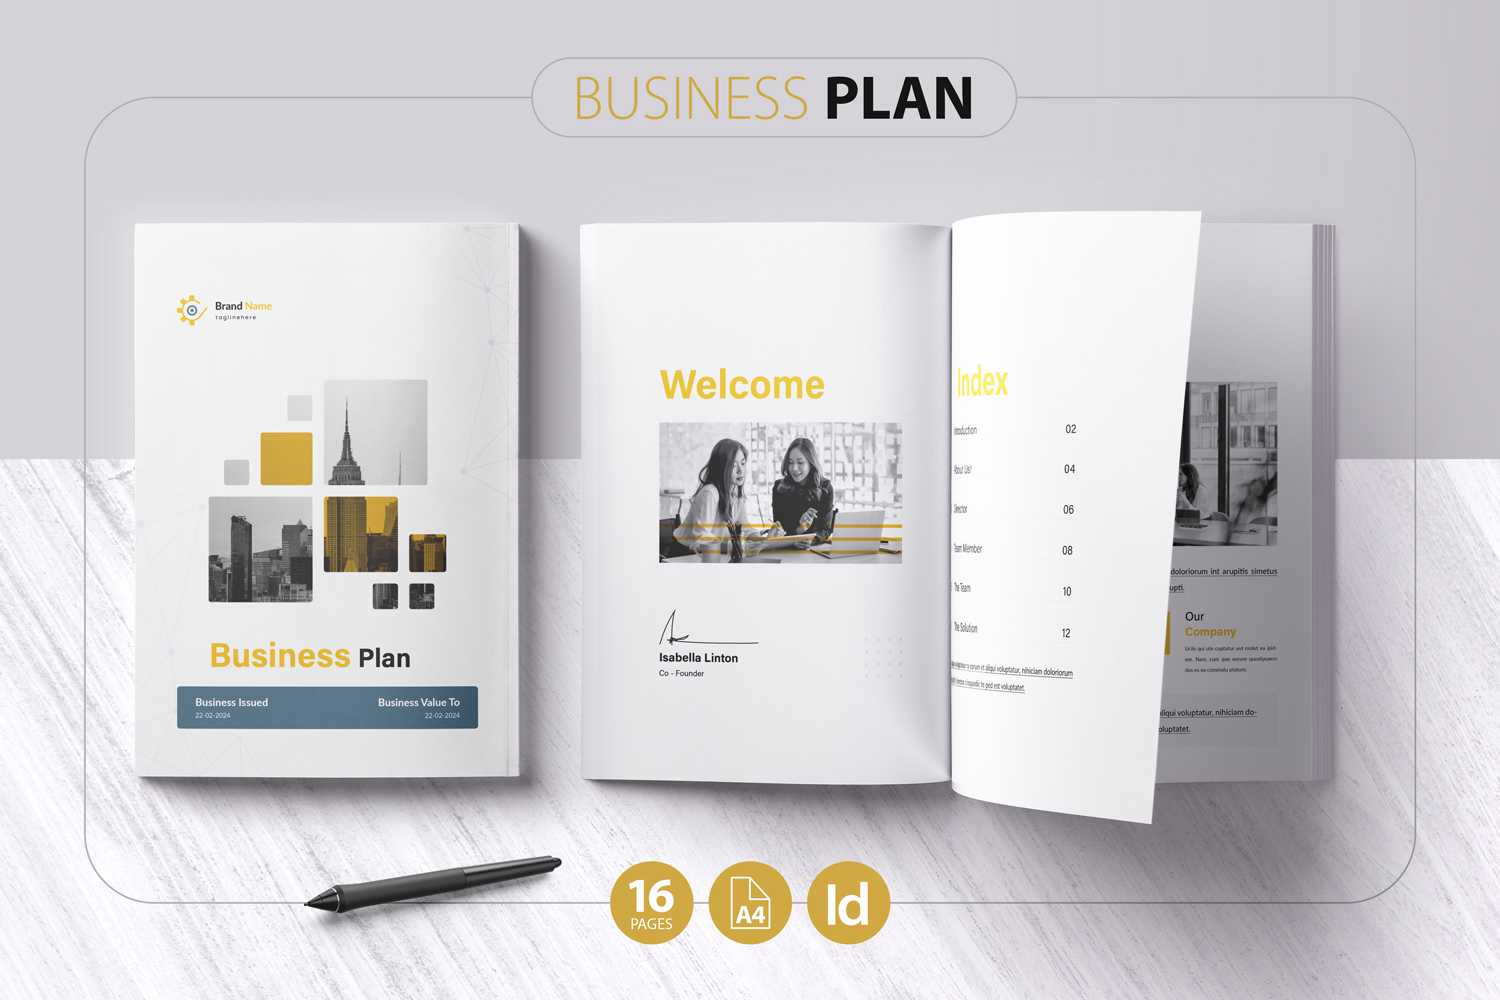 Business Plan - Brochure Template 2